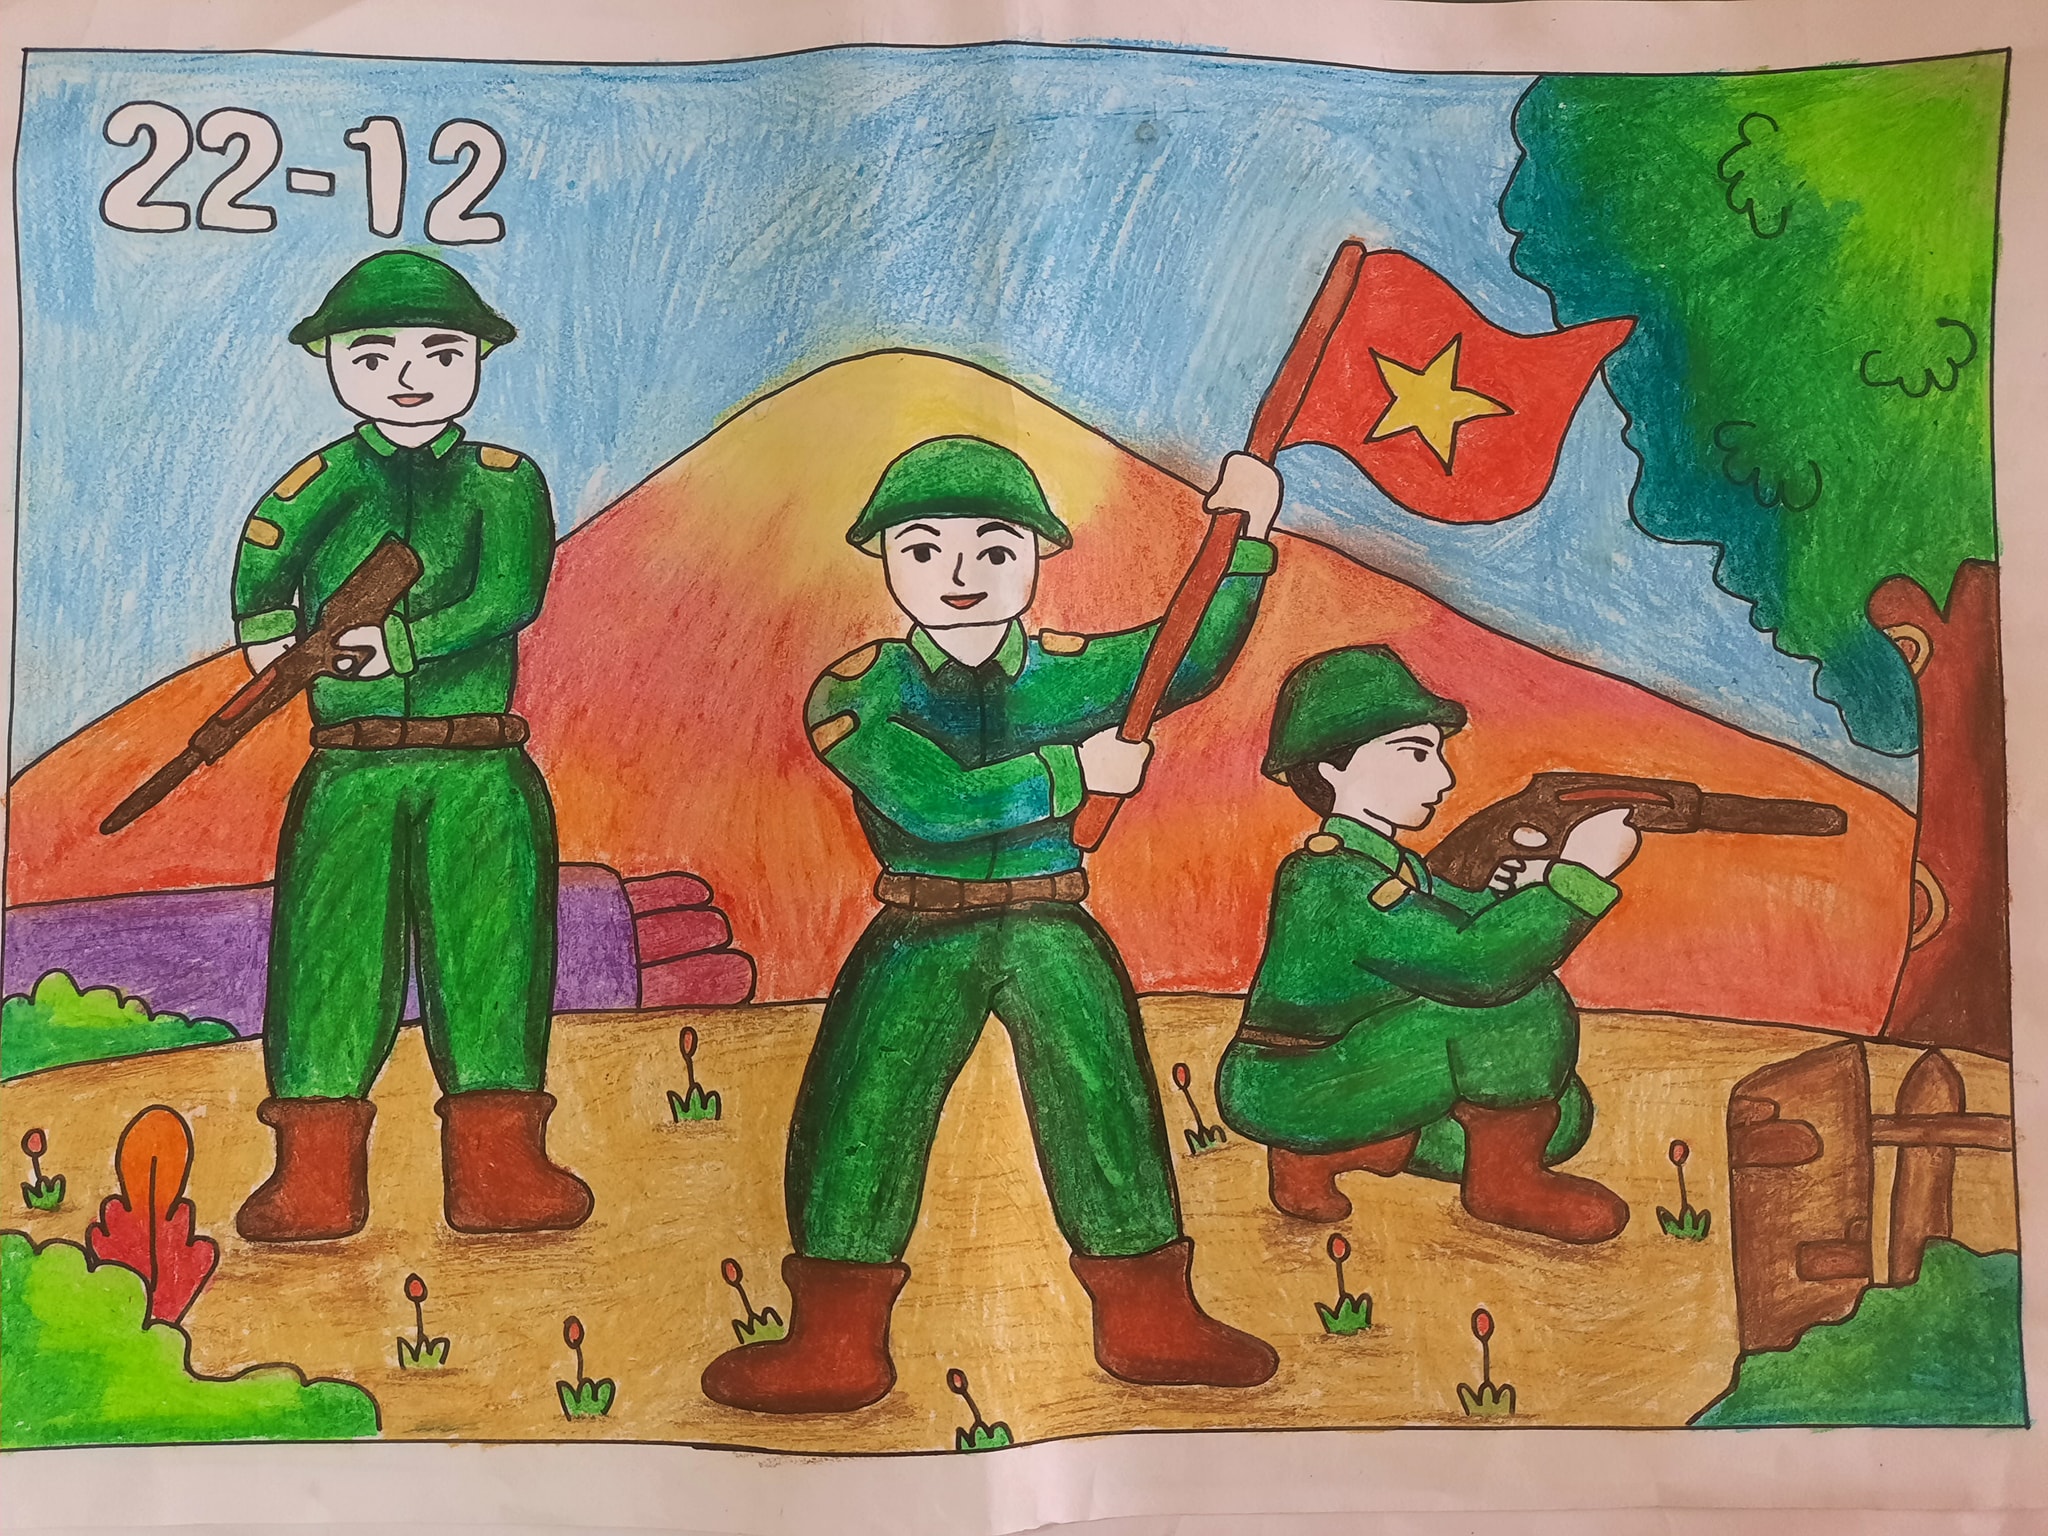 Cùng xem những bức tranh 22/12 xuất sắc, với những nét vẽ tinh tế, tuyệt vời. Mỗi bức tranh mang một ý nghĩa riêng, thể hiện tình yêu và lòng kính trọng với đất nước và con người Việt Nam.